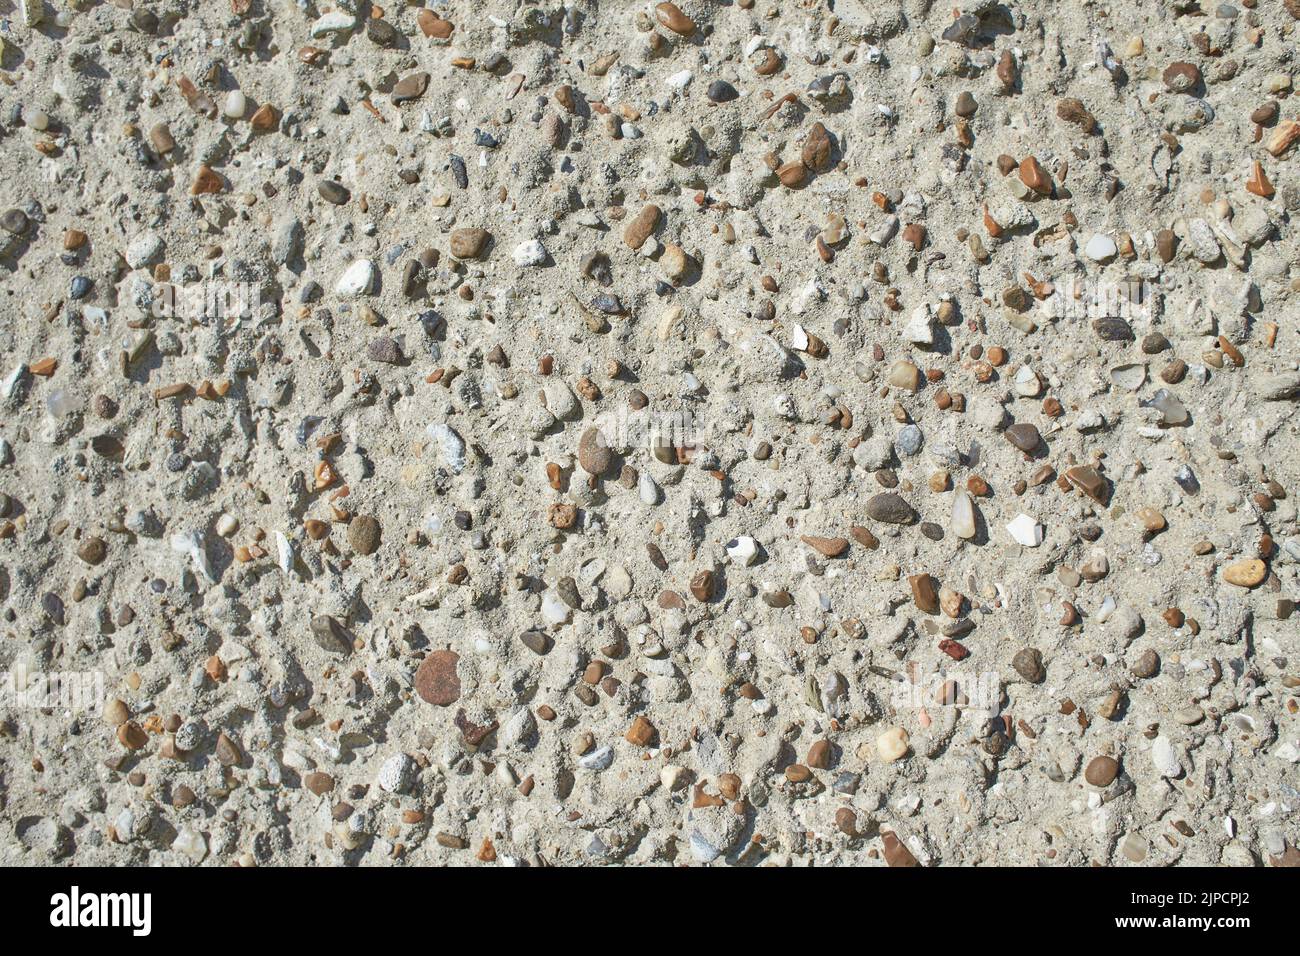 Cailloux naturels dans un sol en béton, texture de sol en pierre ronde antidérapante, image de concept pour un design durable ou écologique pour la décoration intérieure Banque D'Images